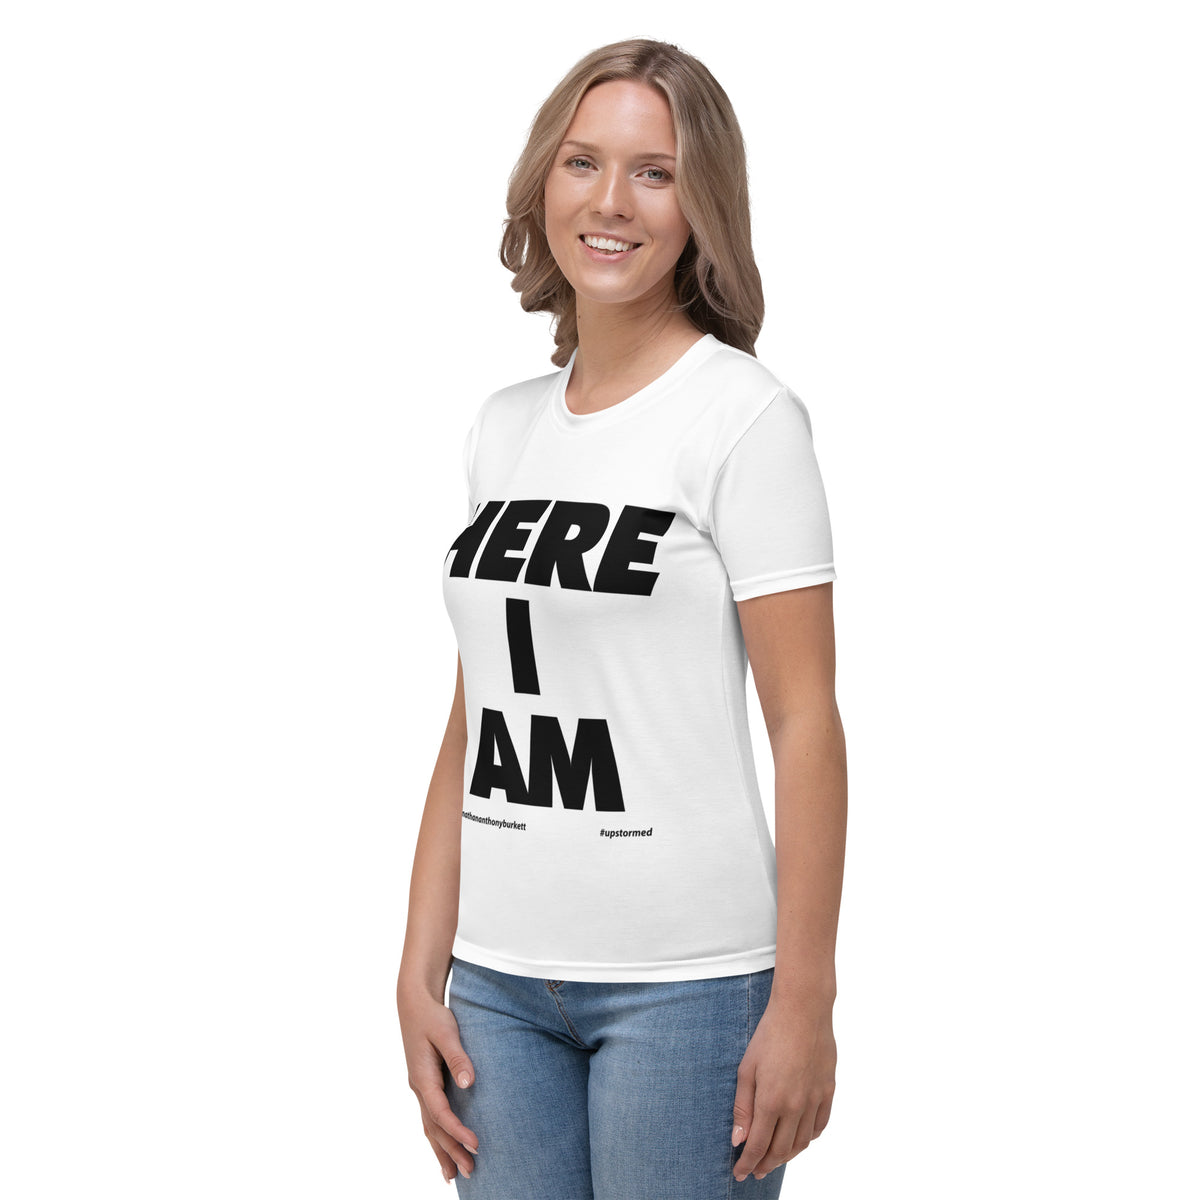 Here I Am Women's T-shirt